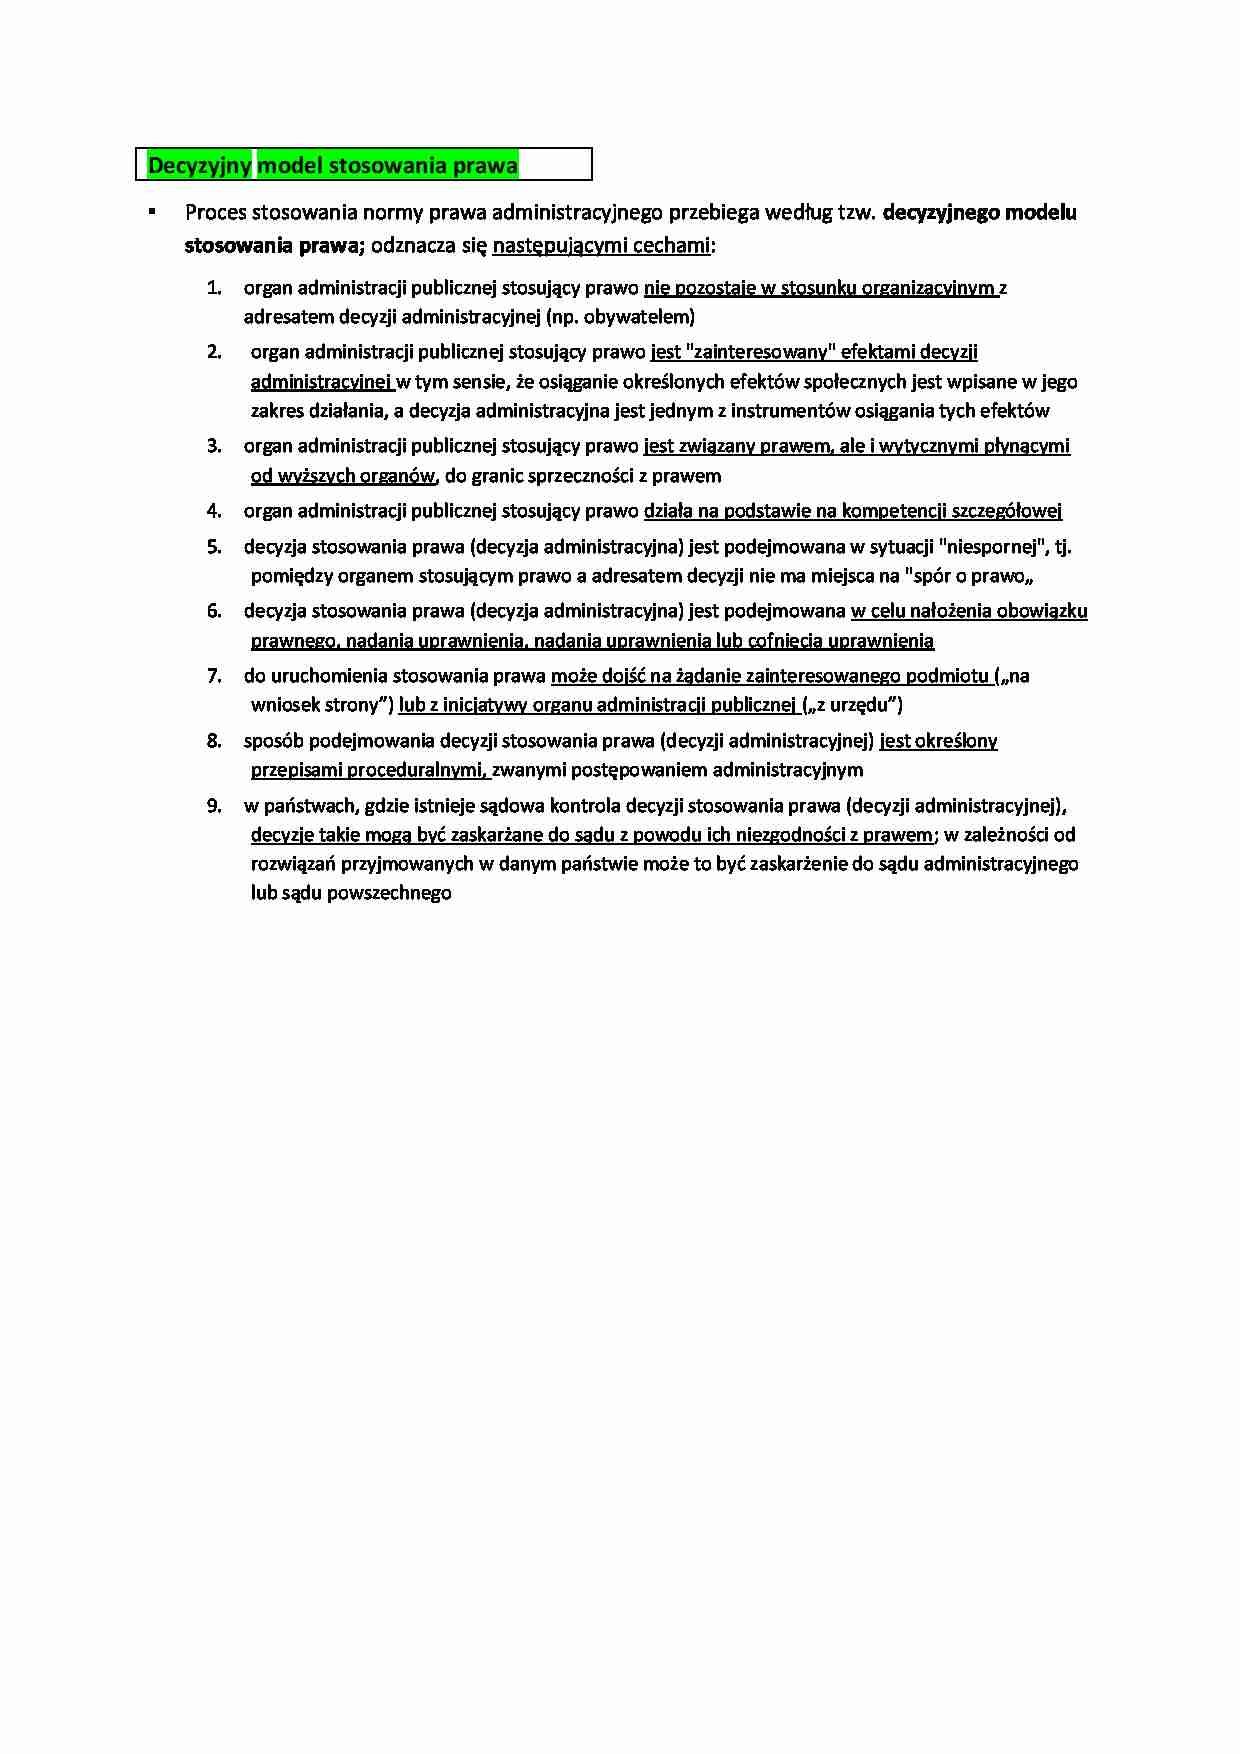 Decyzyjny model stosowania prawa - omówienie (I sem) - strona 1